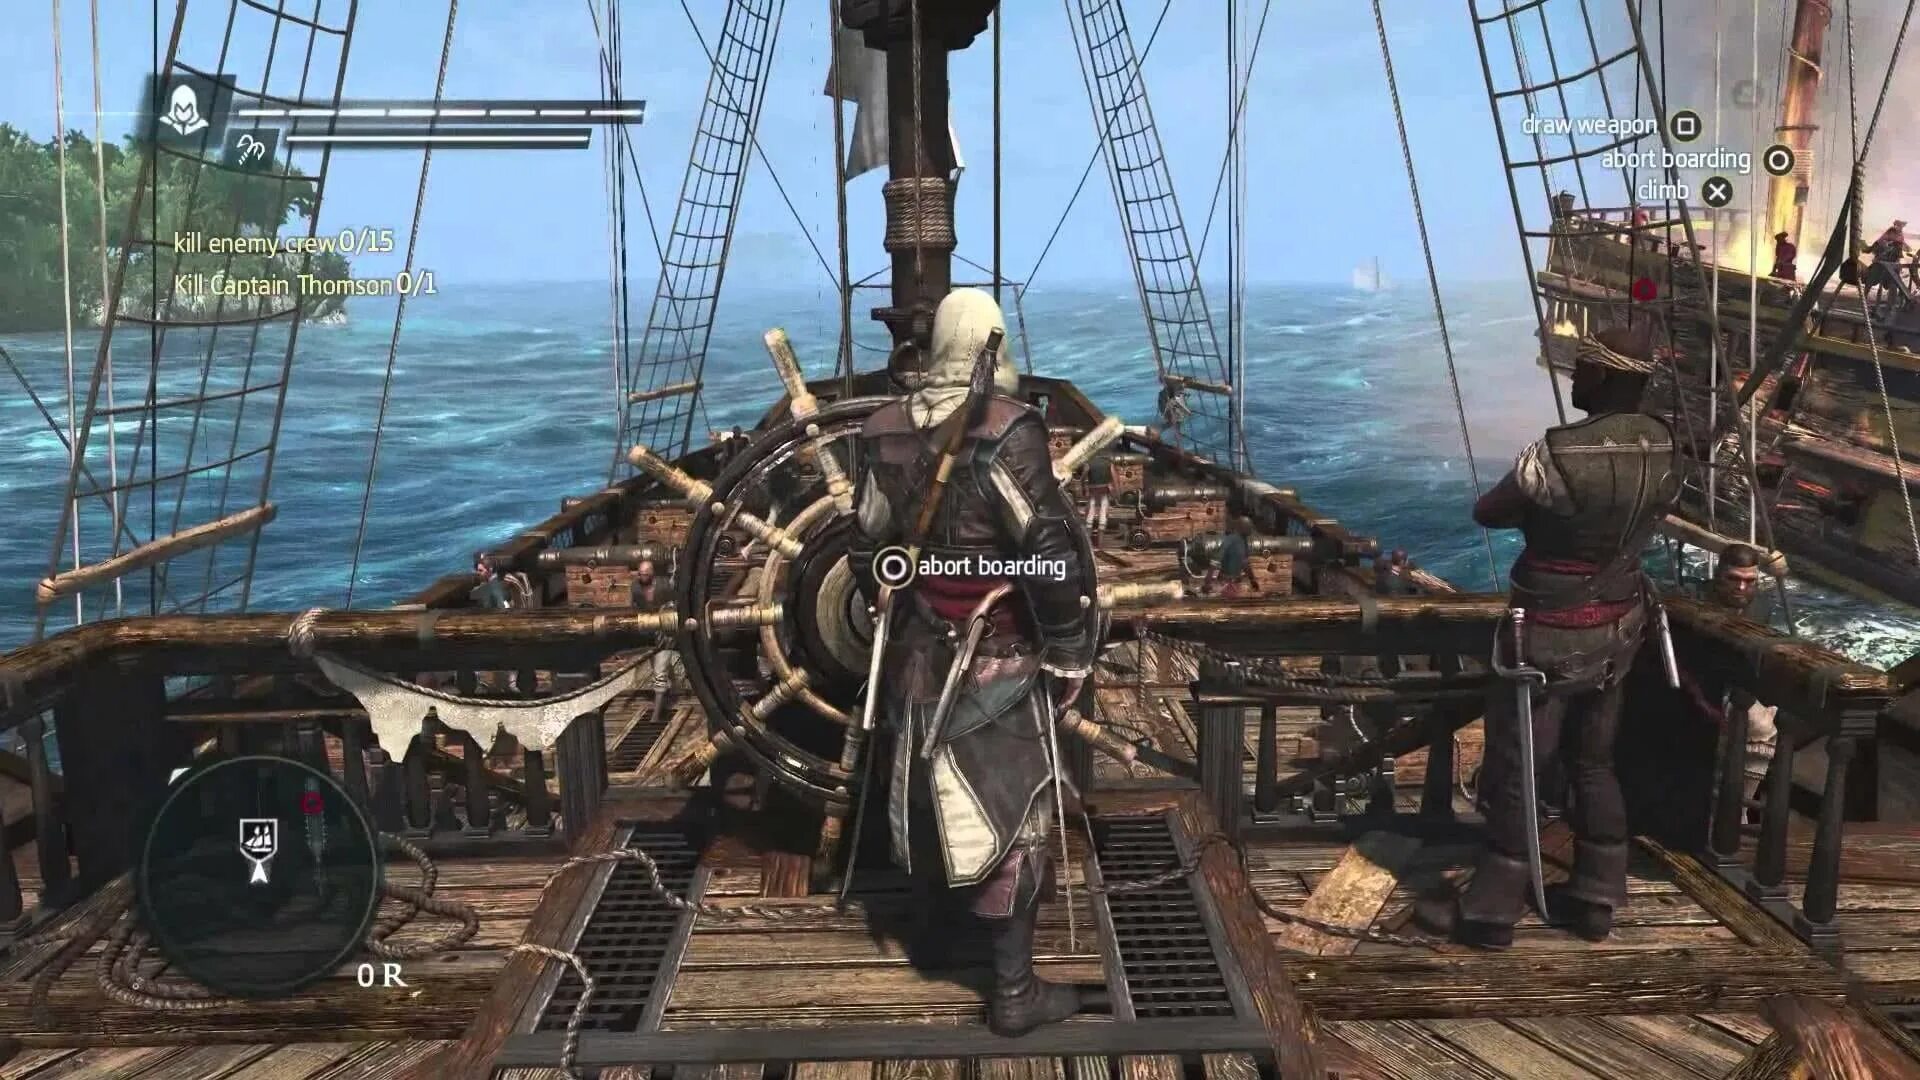 Игры про пиратов с открытым миром. Assassin’s Creed IV: Black Flag – 2013. Assassins Creed Pirates Блэк флаг. Ассасин Крид 4 корабль Галка. Ассасин Блэк флаг Галка.